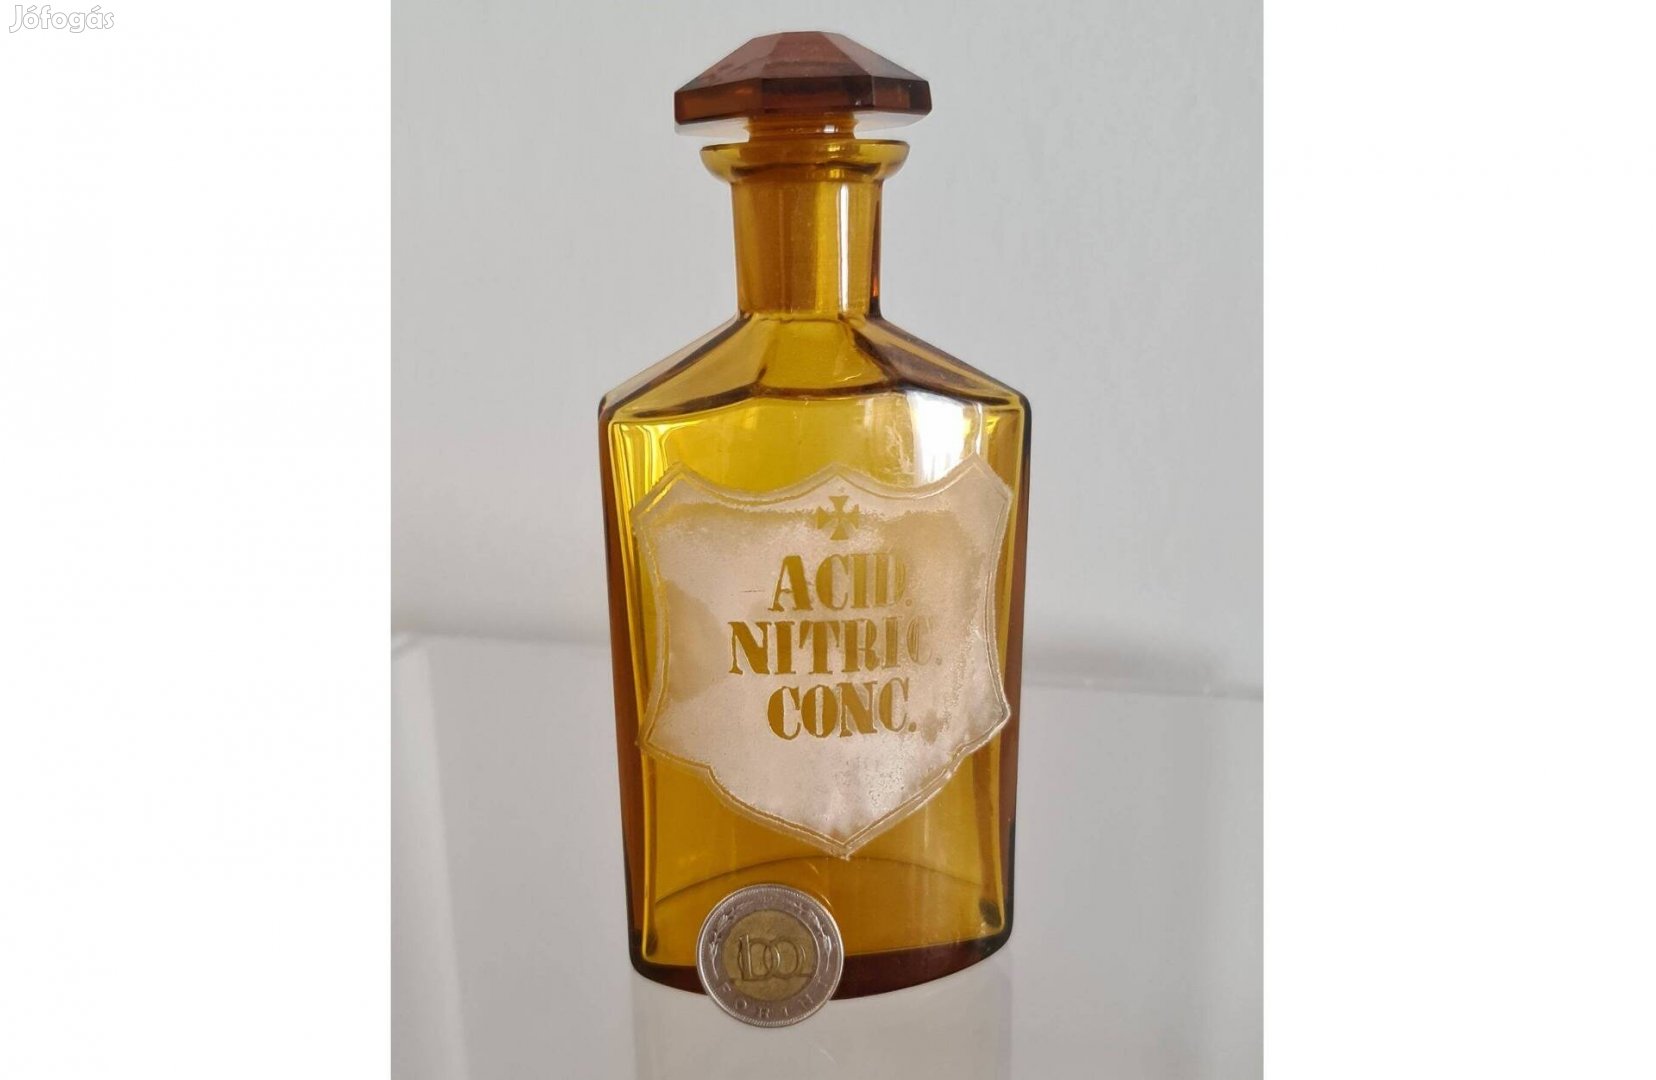 Ritka méz színű, antik patika üveg "Acid. Nitric. Conc." felirattal